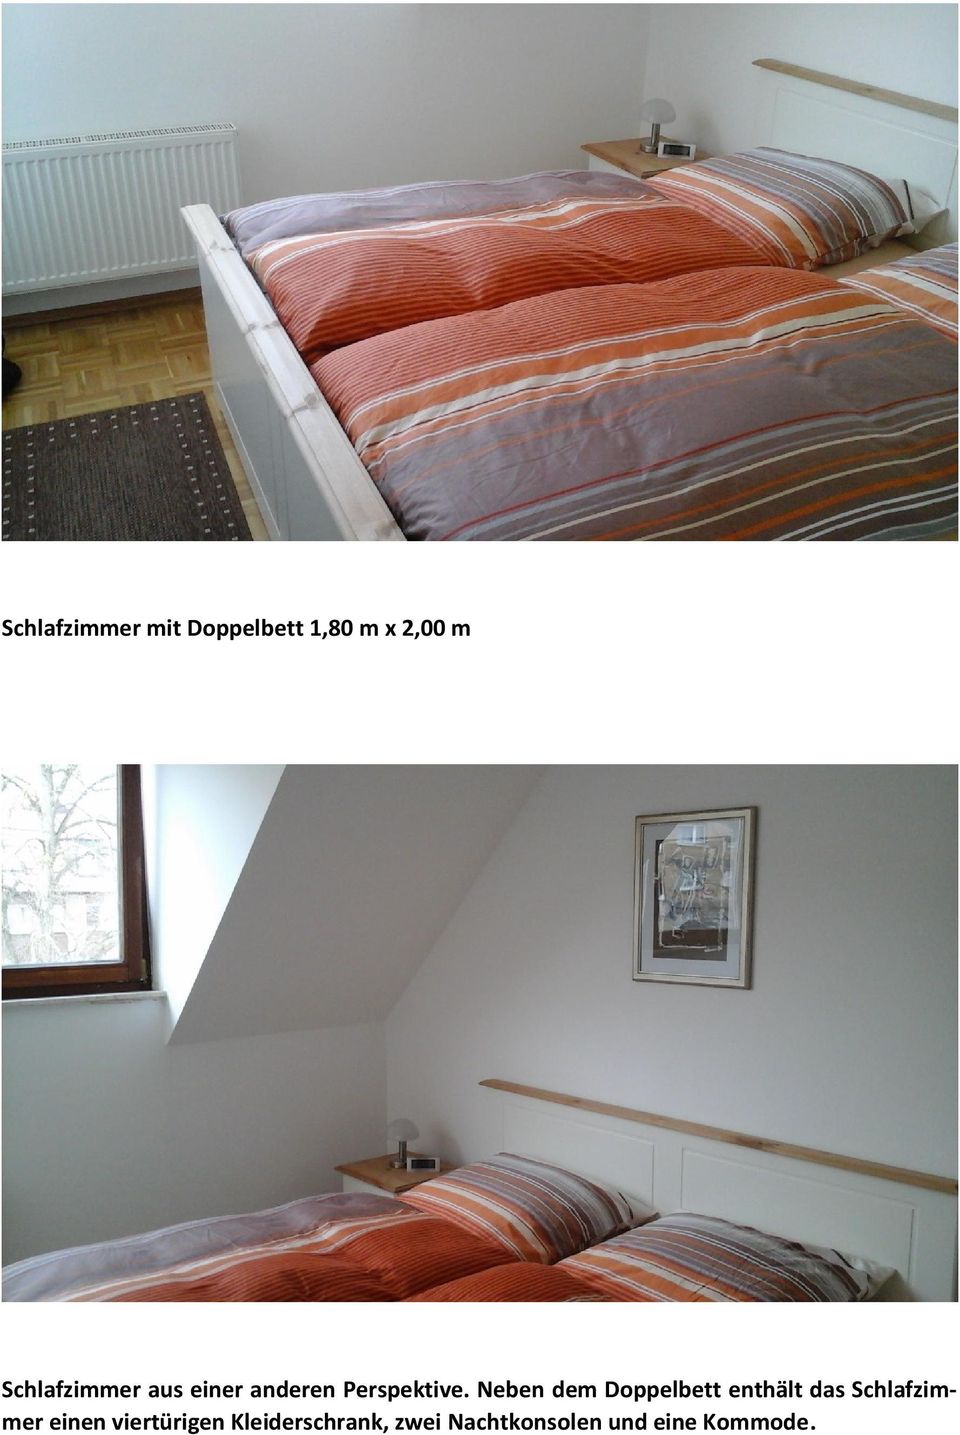 Neben dem Doppelbett enthält das Schlafzimmer